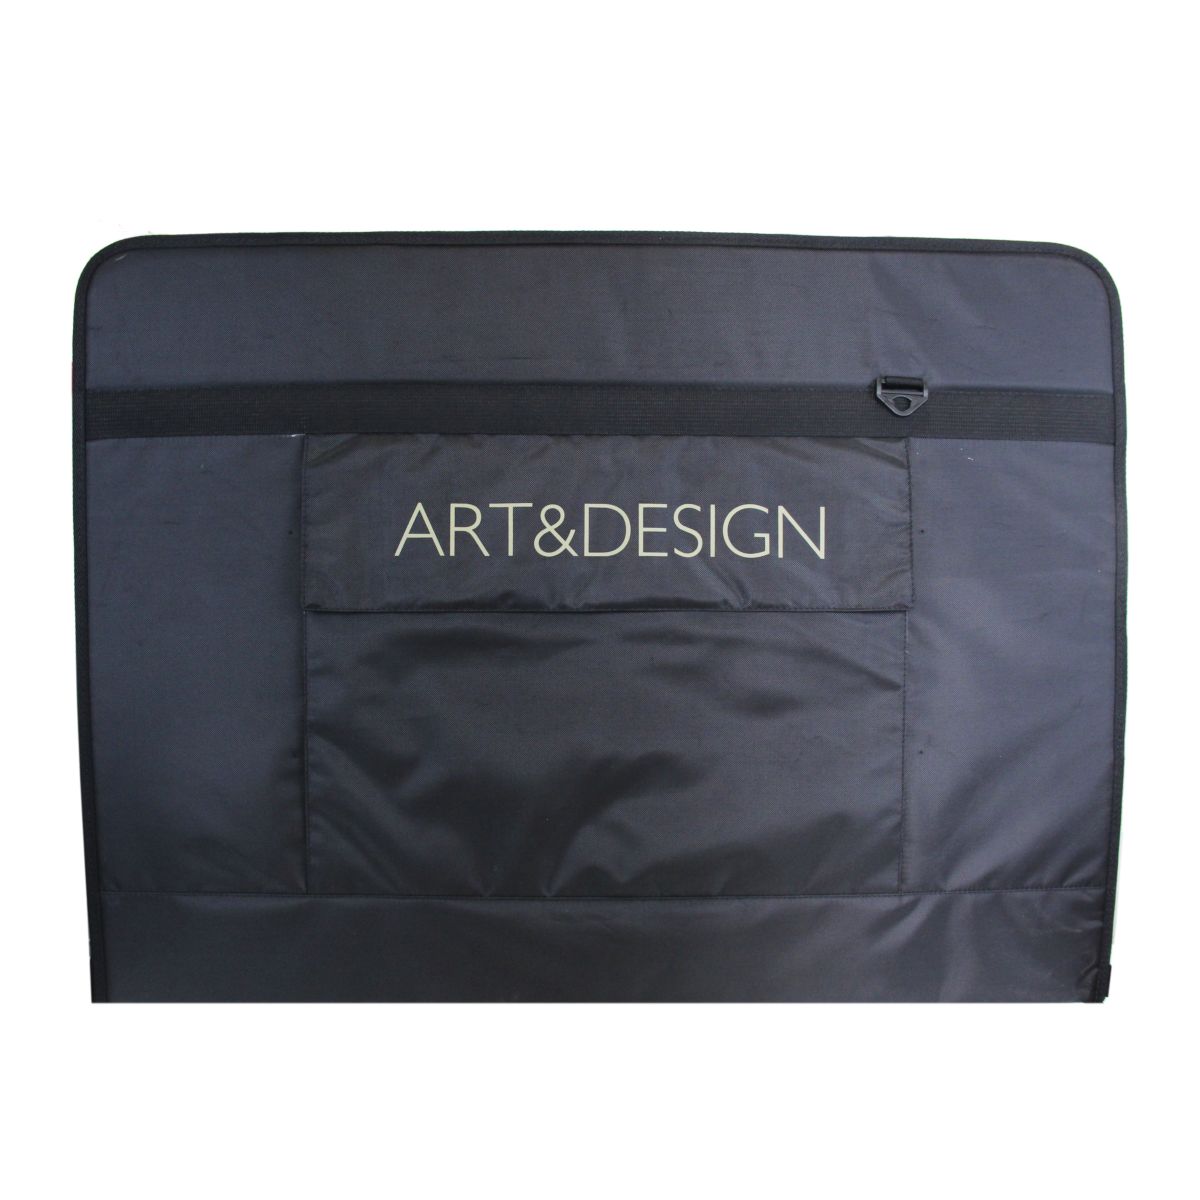 Папка на молнии ART&DESIGN А1 ткань черная, 1 внешний карман, ремень по 2 490.00 руб от Antan